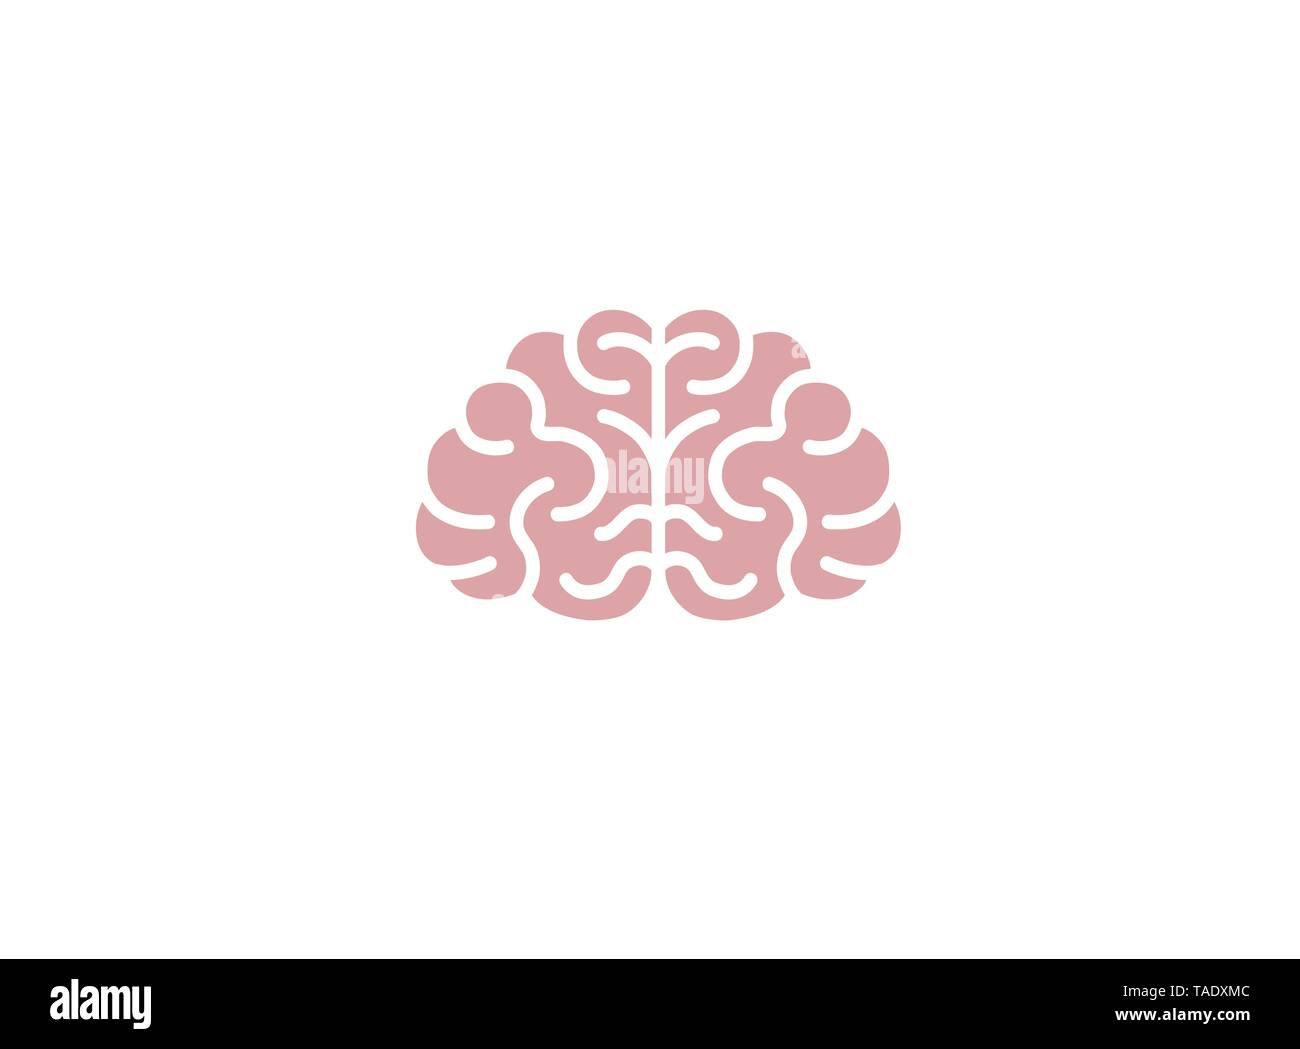 Creative Abstract Brain Logo Vector Design Illustration Stock Vector